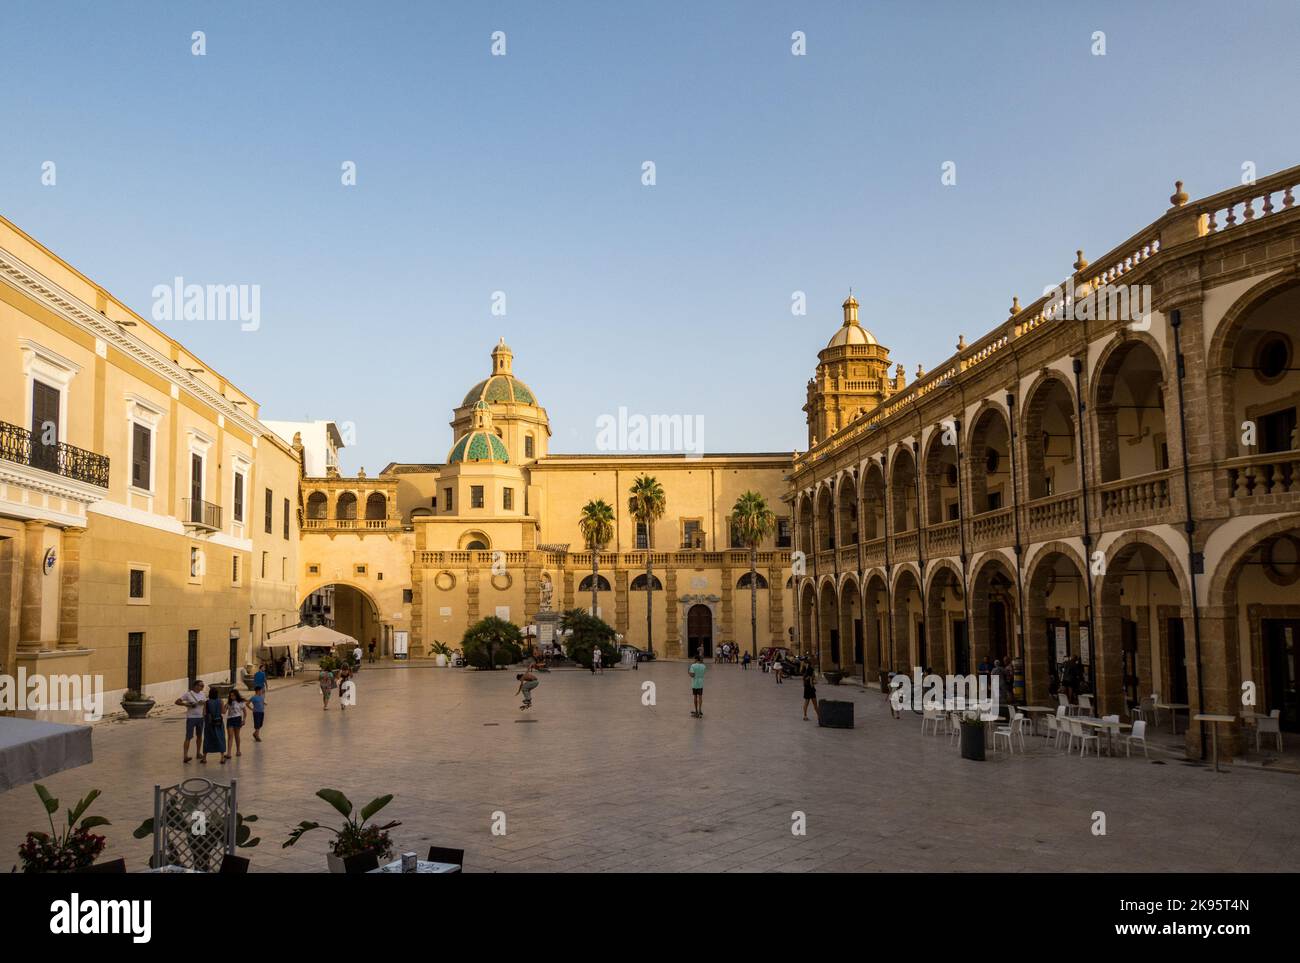 Italy, Sicily, Mazara del Vallo. Piazza Della Repubblica with Cathedral del Santissimo Salvatore at the end. Stock Photo